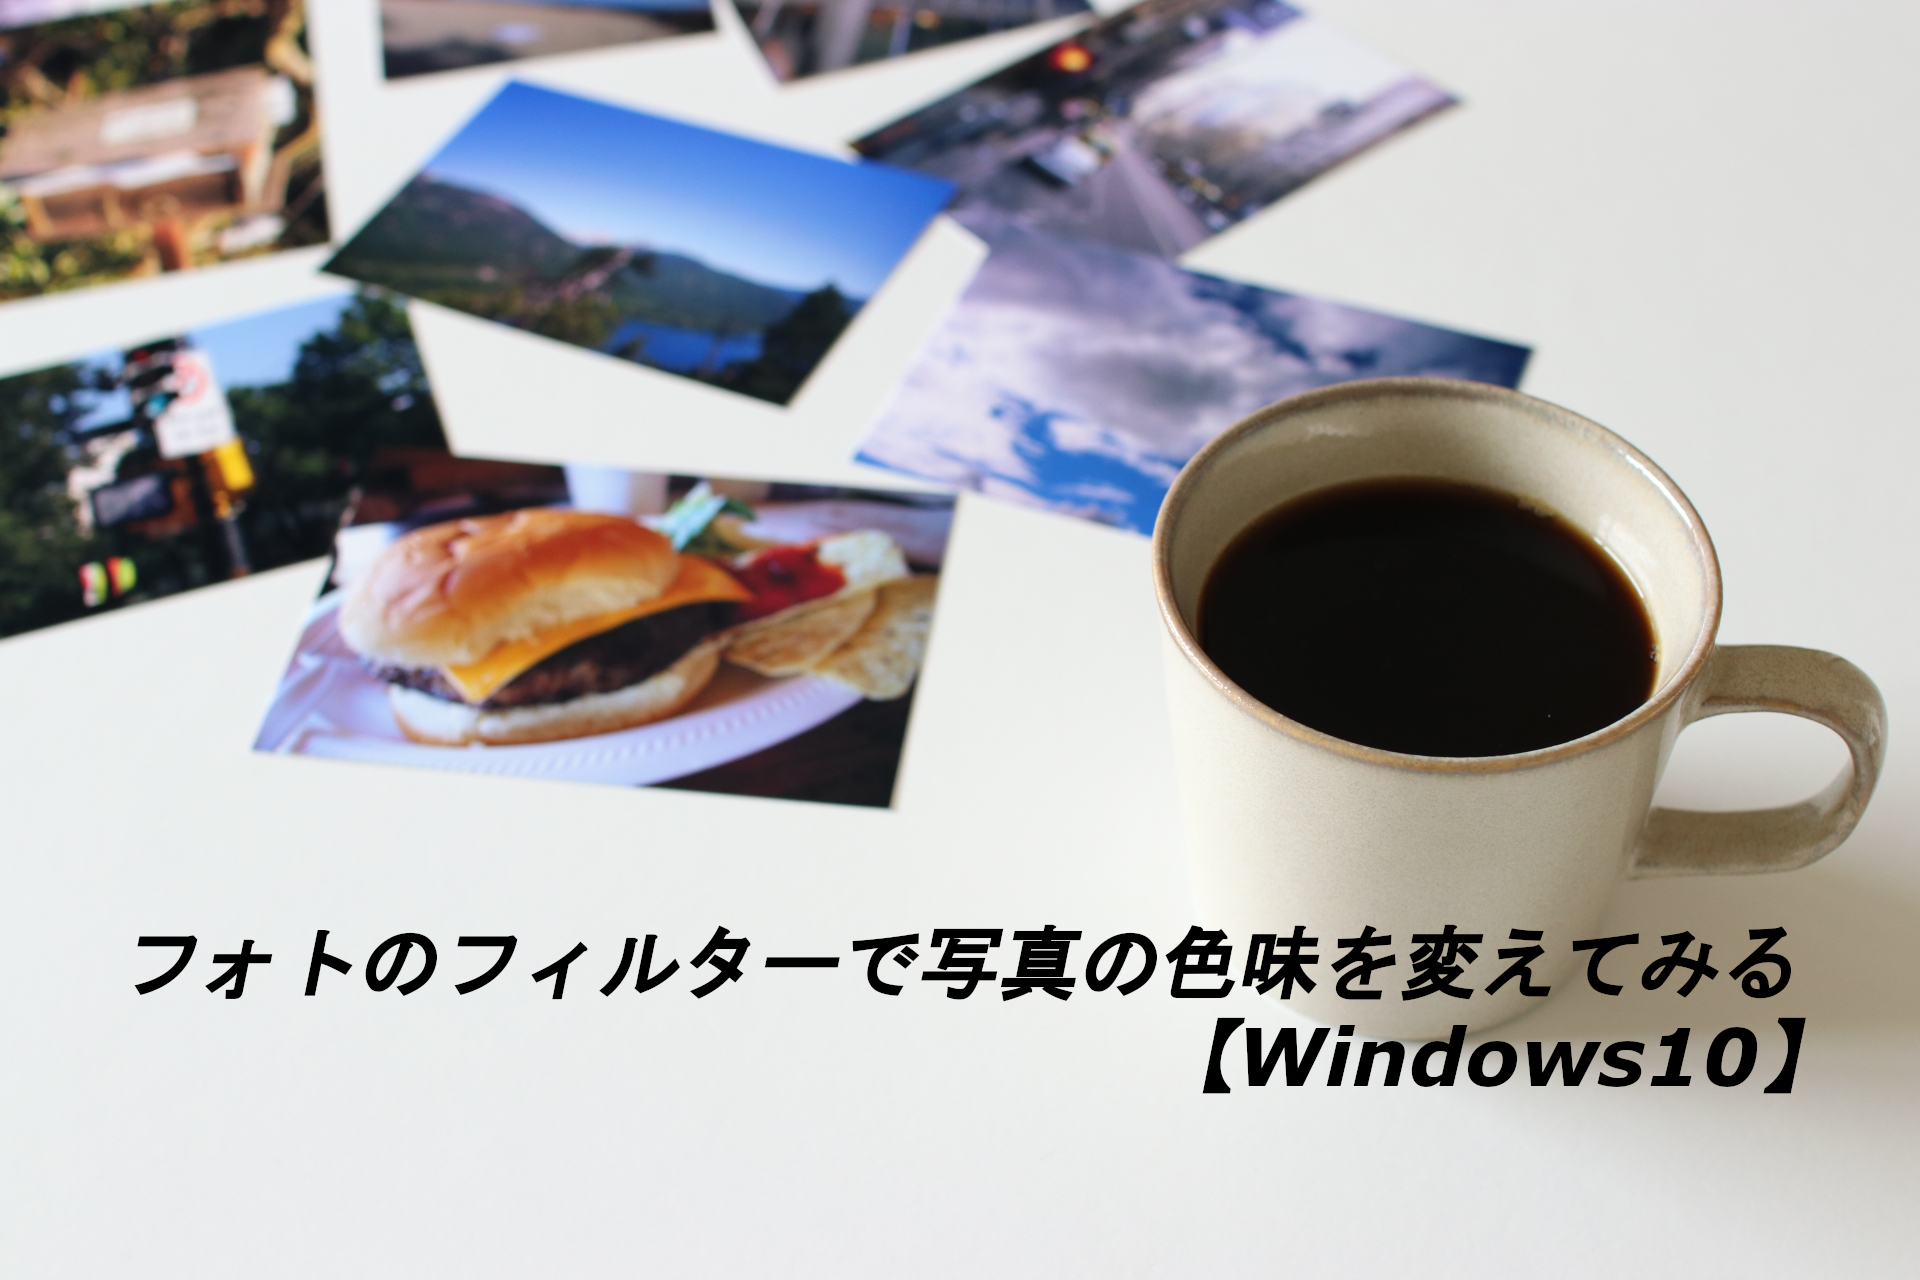 フォトのフィルターで写真の色味を変えてみる【Windows10】